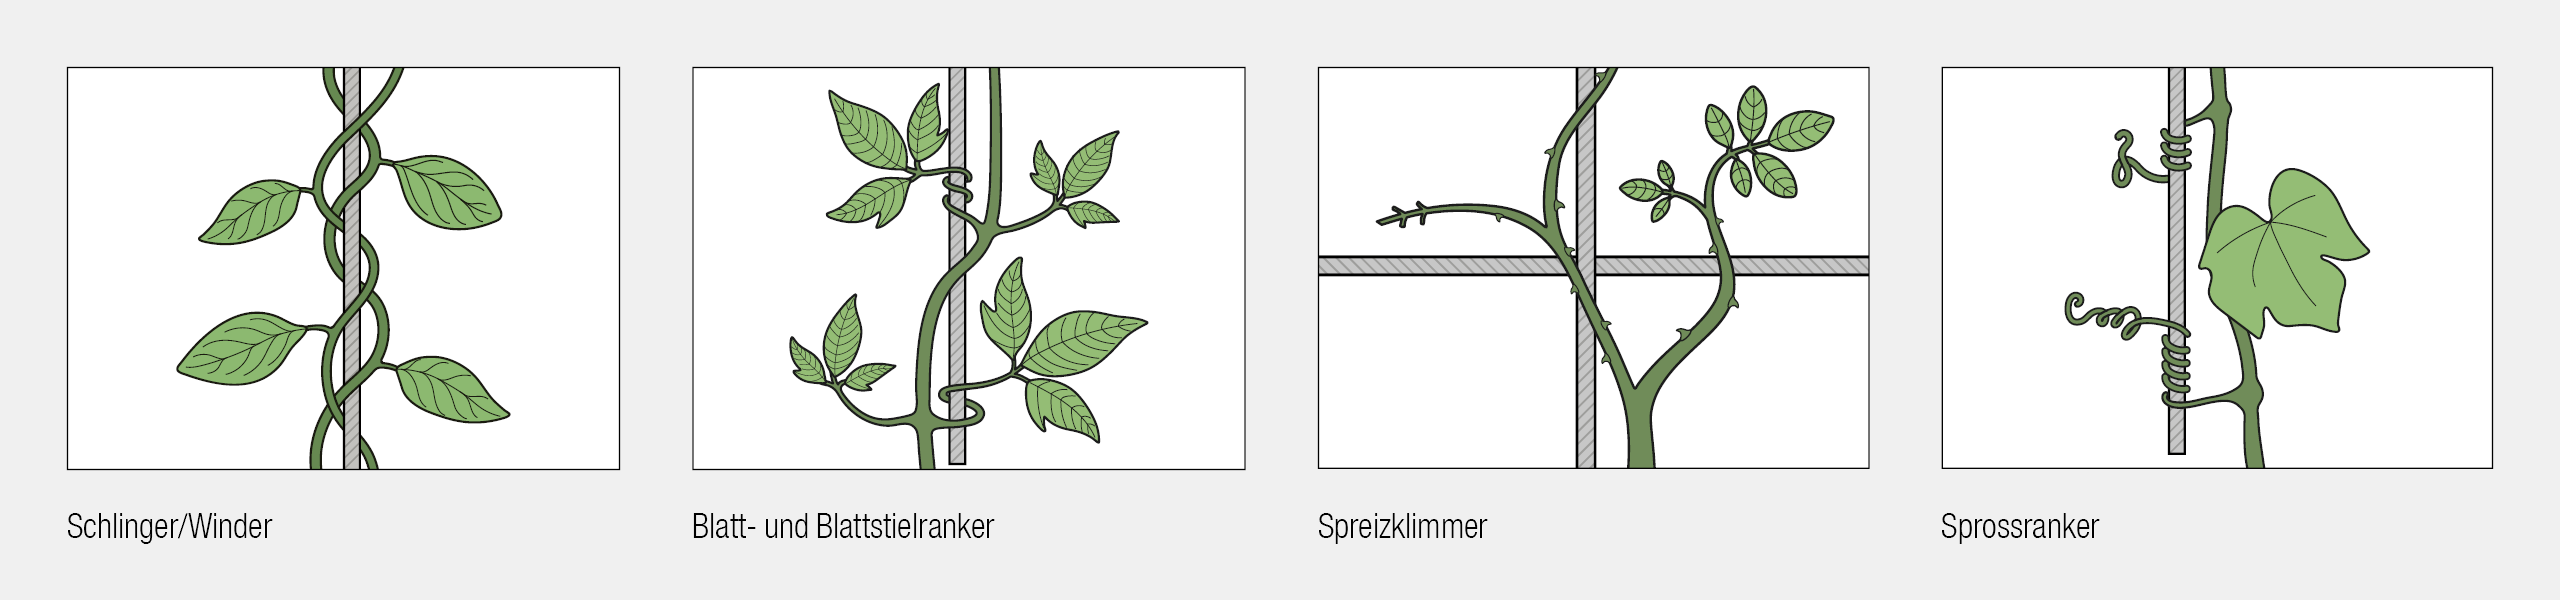 Bei der Begrünung von WDVS-Fassaden hängt das mögliche Verlegeraster auch von der Art der Pflanze ab, bzw. ist die Pflanze je nach geplantem Verlegraster entsprechend zu wählen.